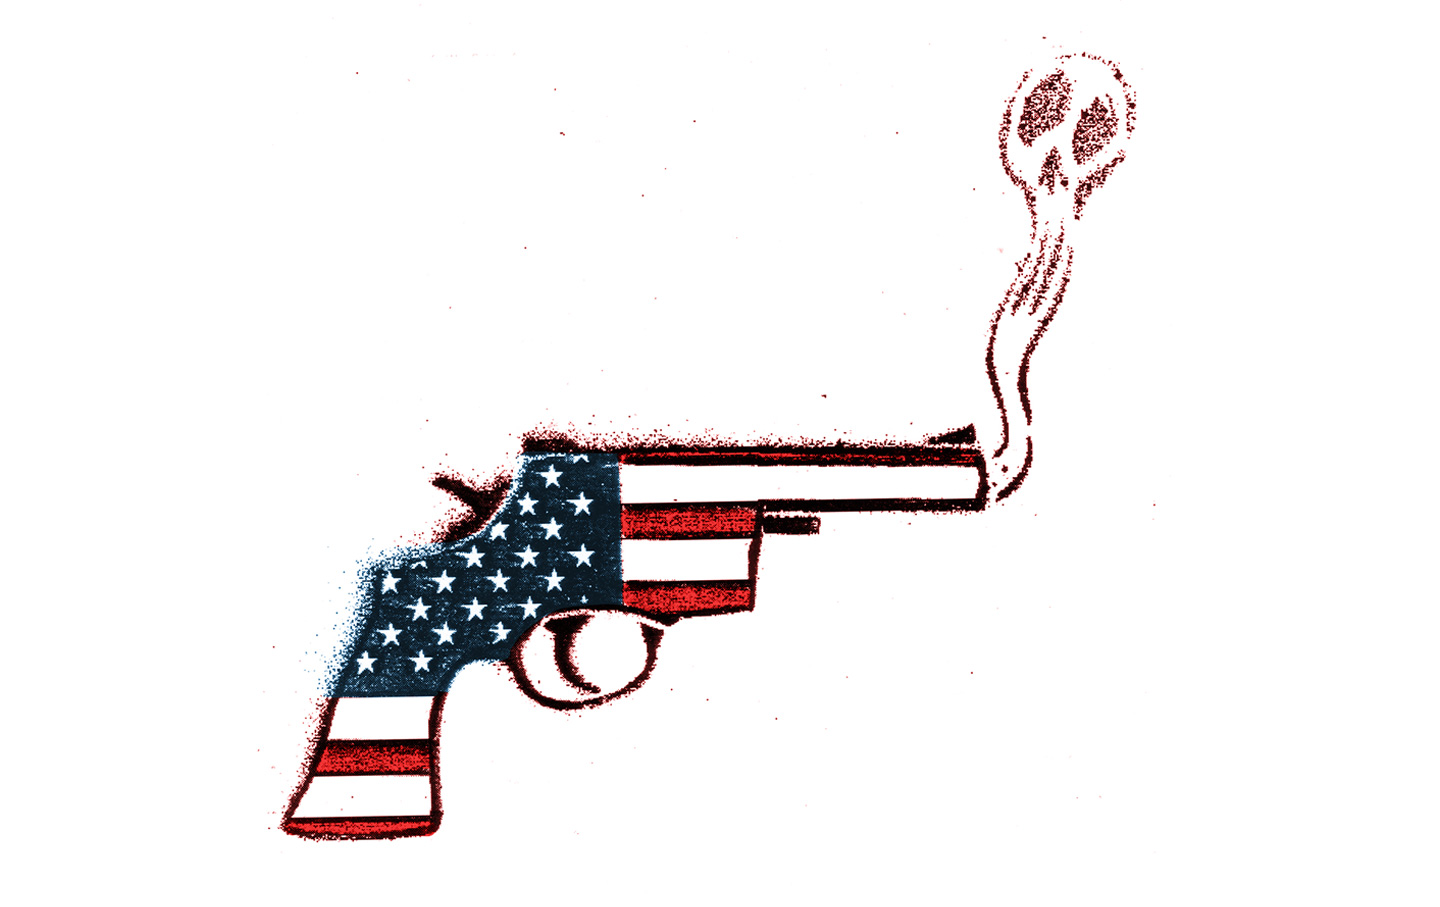 American’s Gun Culture